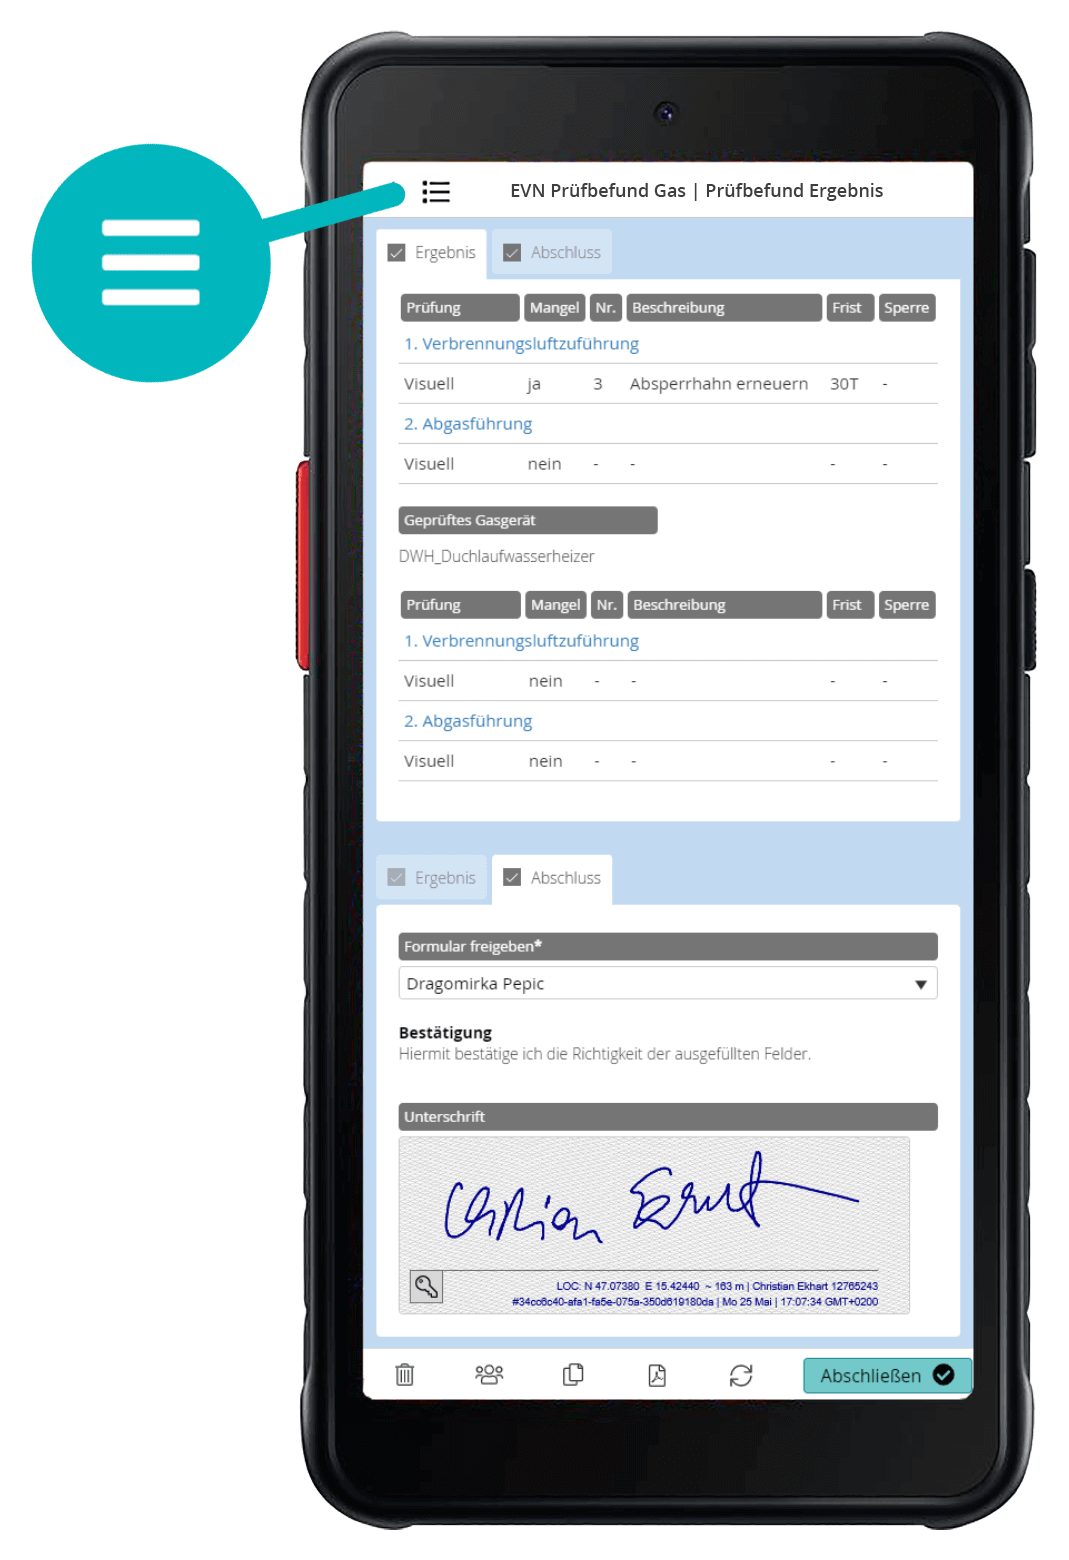 Netz Niederösterreich: Mobile responsive forms